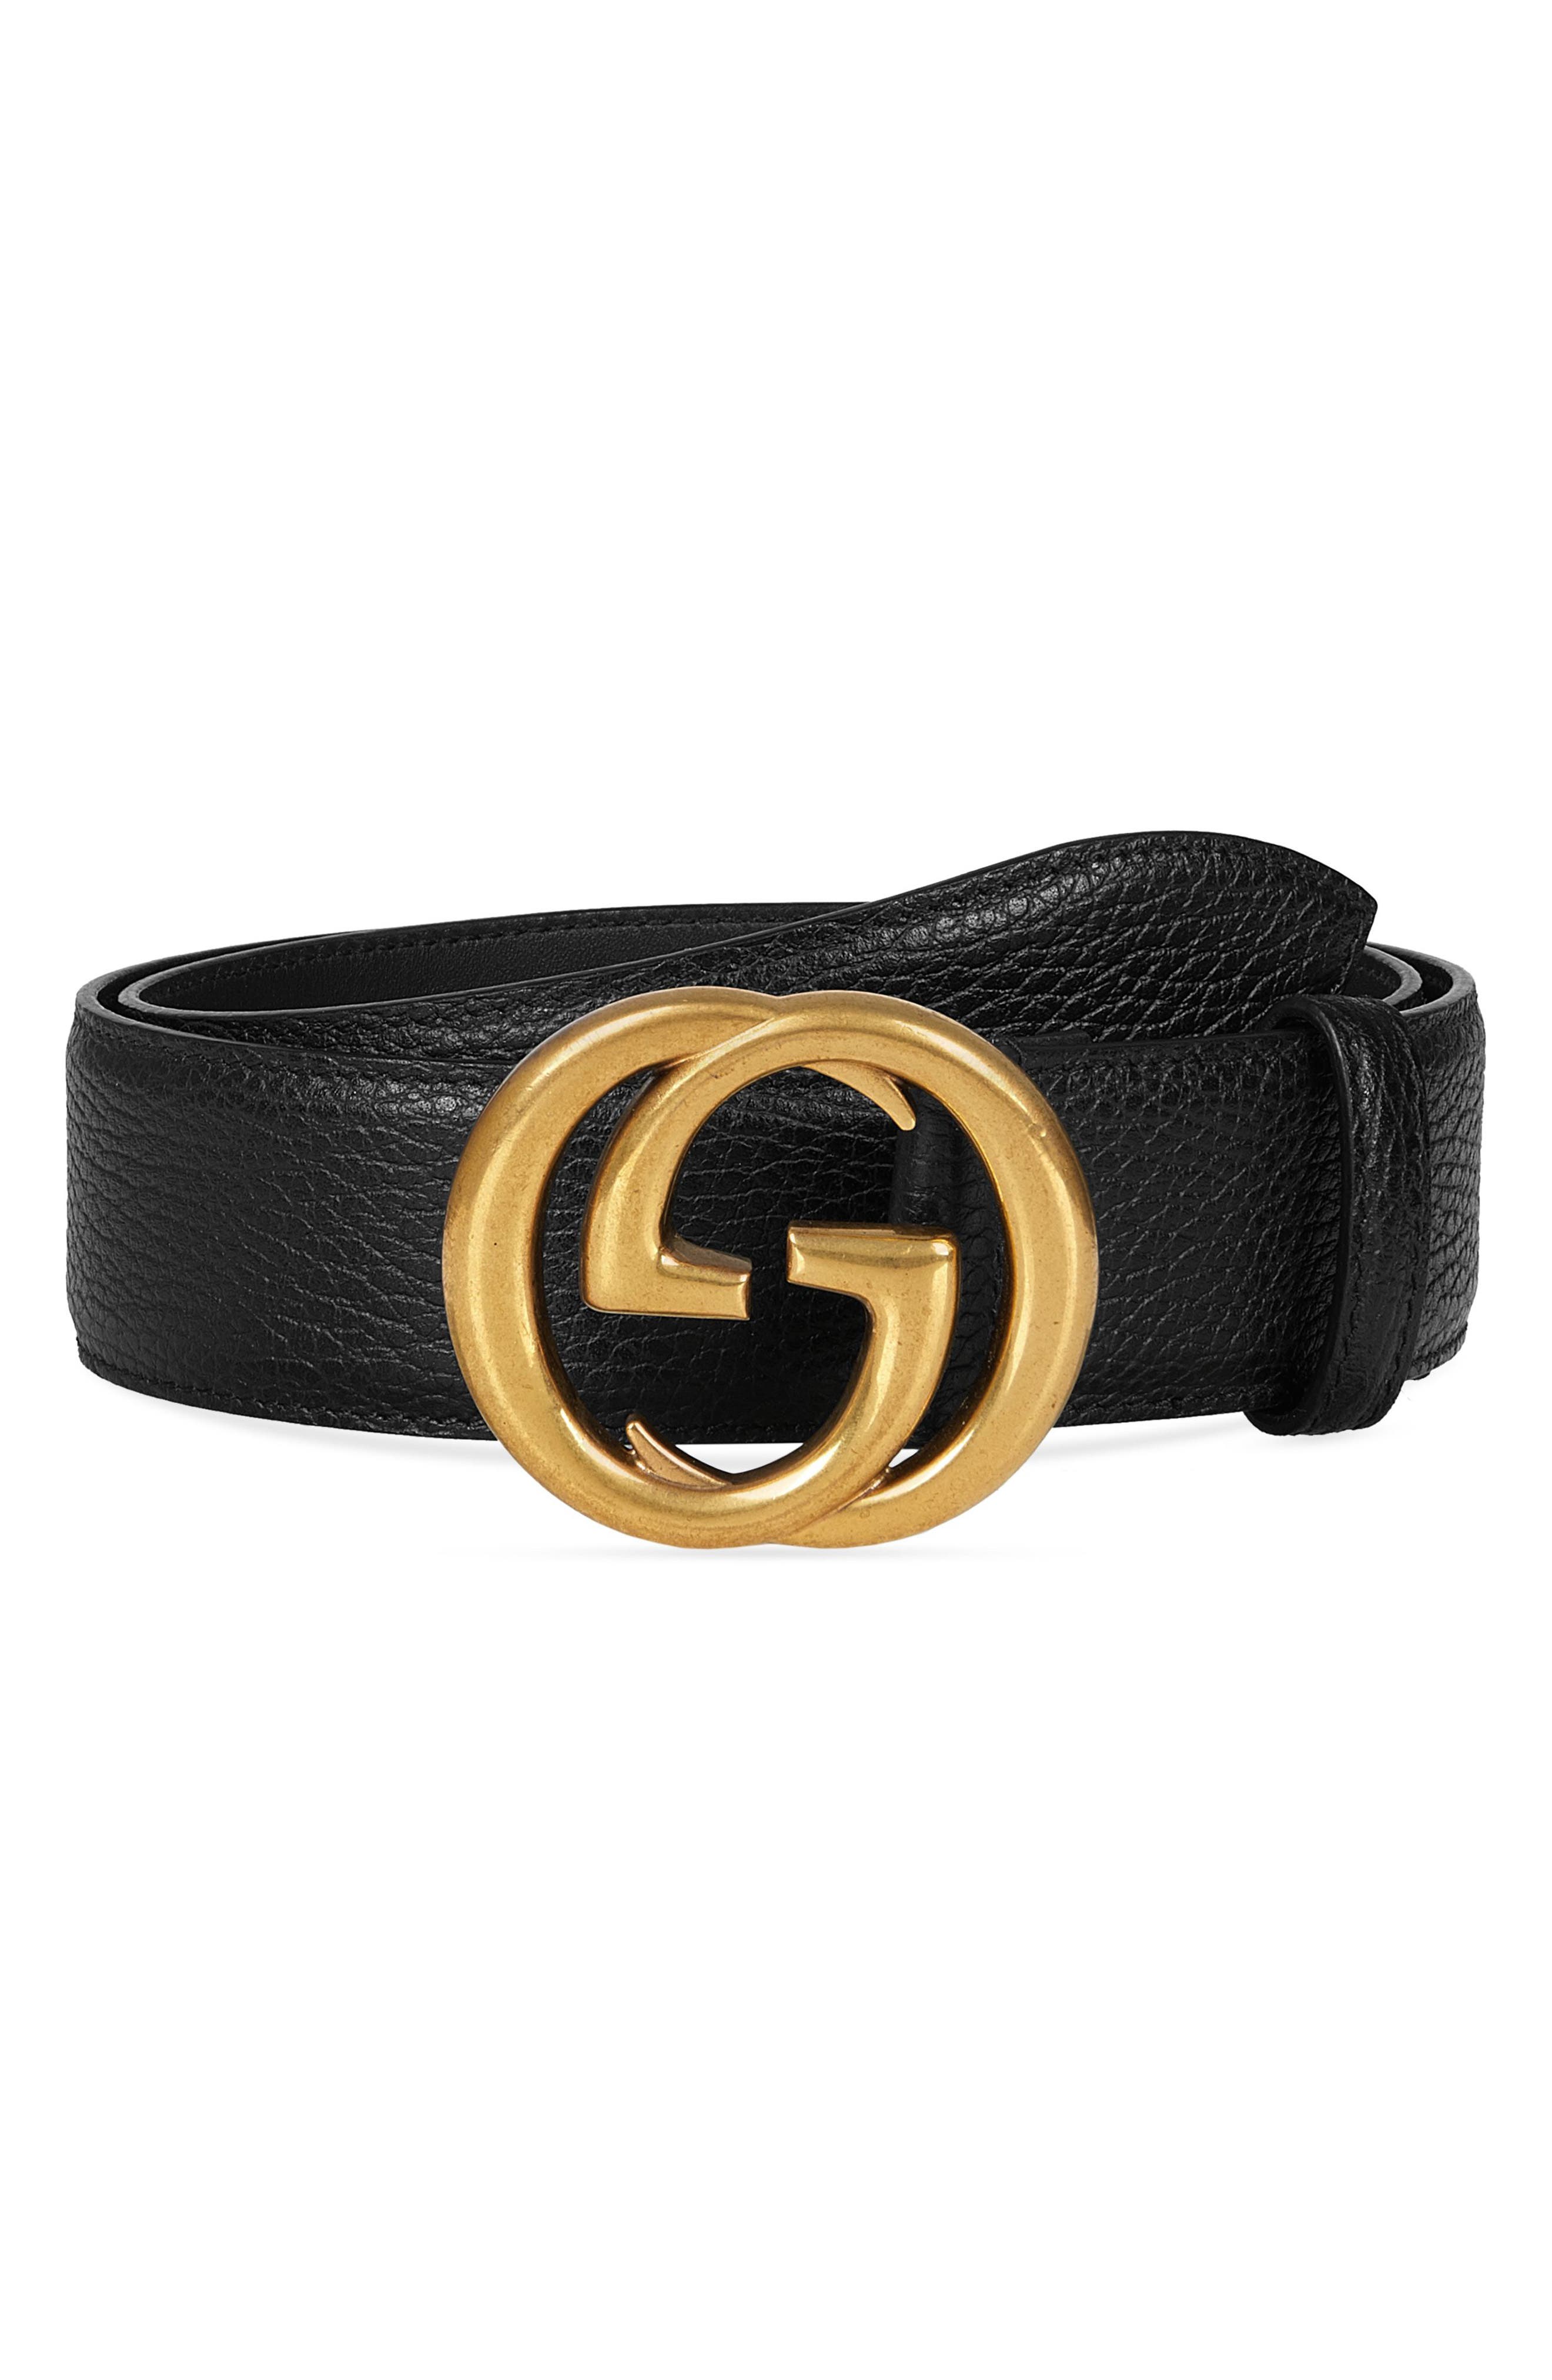 mens gold gucci belt